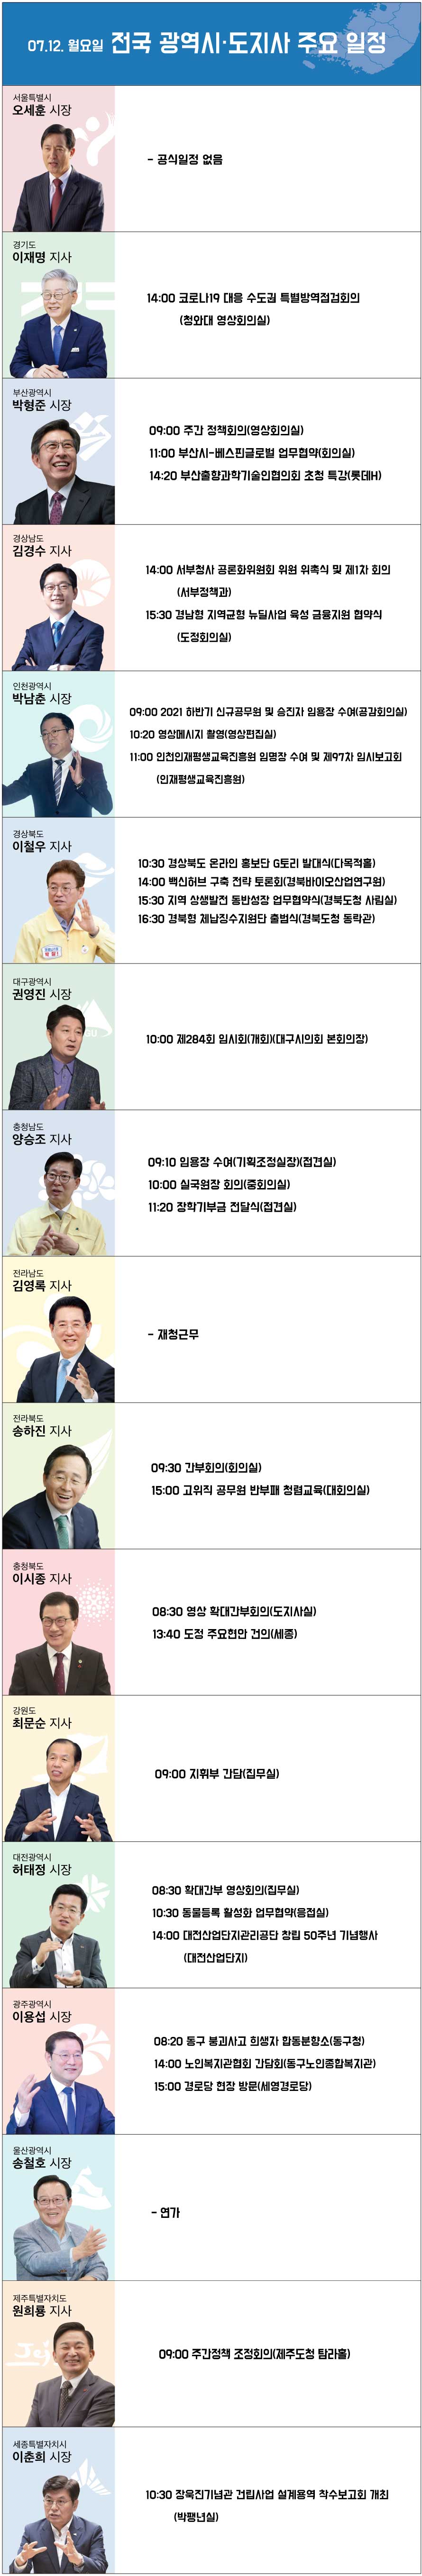 7월 12일 광역시·도지사 주요 일정 [그래픽 = 박금현 기자]<br>